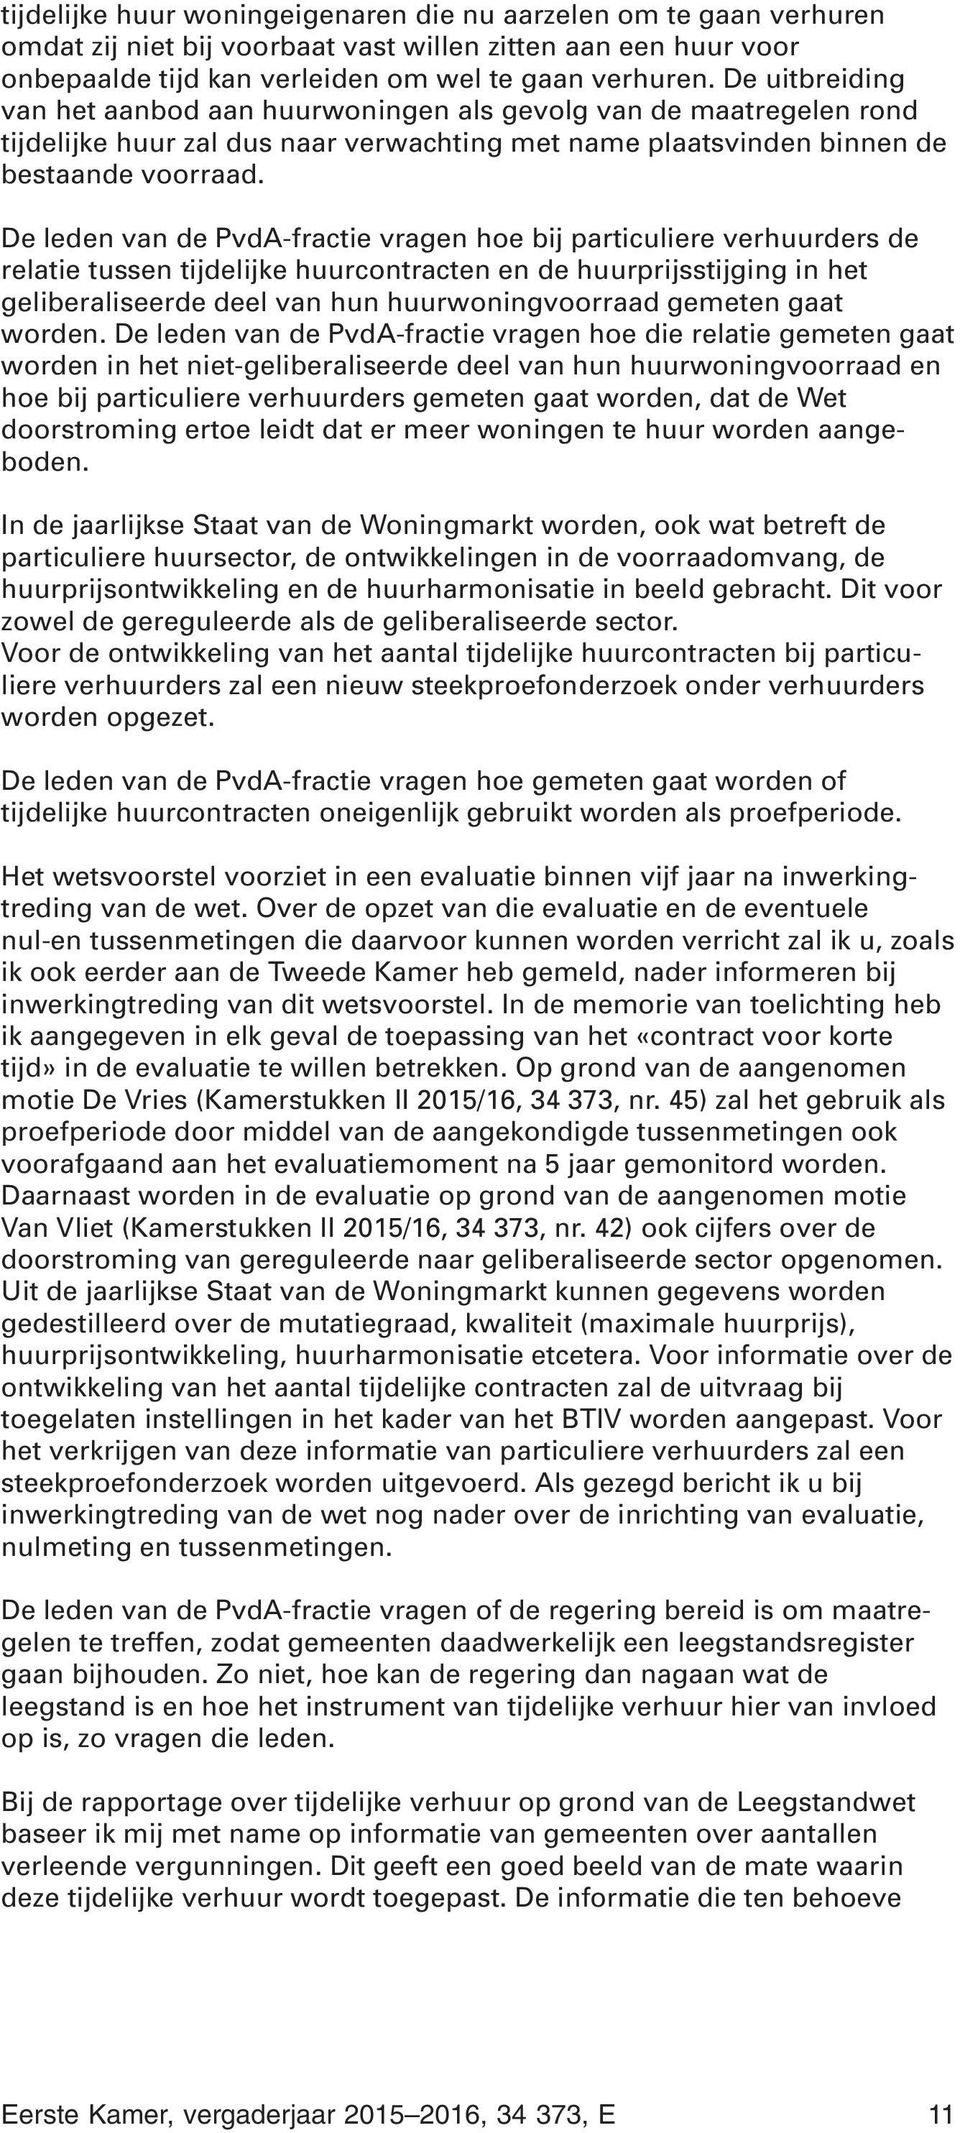 De leden van de PvdA-fractie vragen hoe bij particuliere verhuurders de relatie tussen tijdelijke huurcontracten en de huurprijsstijging in het geliberaliseerde deel van hun huurwoningvoorraad